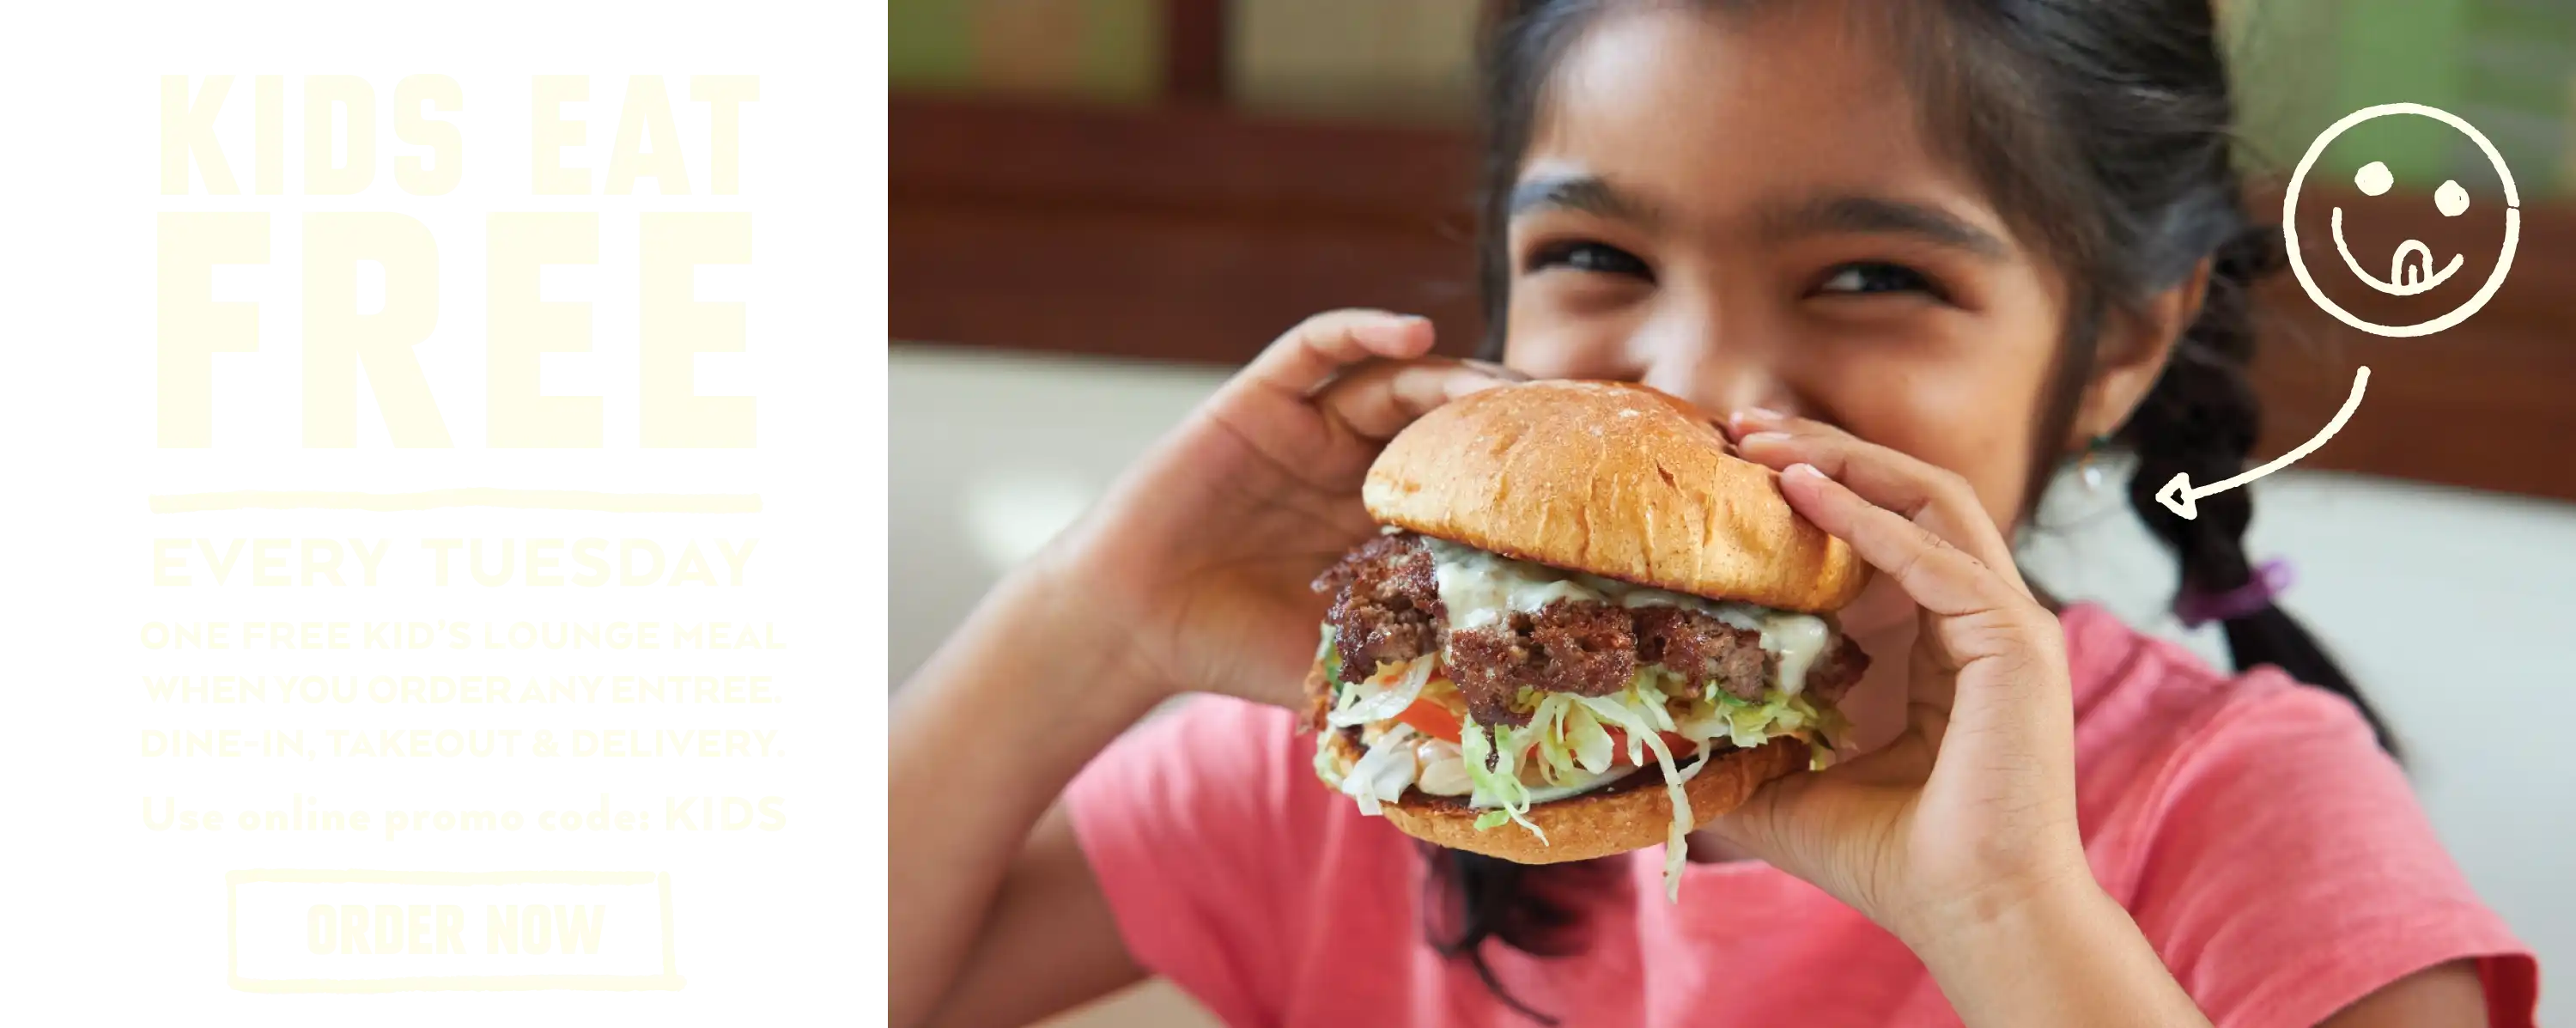 Kids Eat Free at Burger Lounge Every Tuesday! - Desktop Version